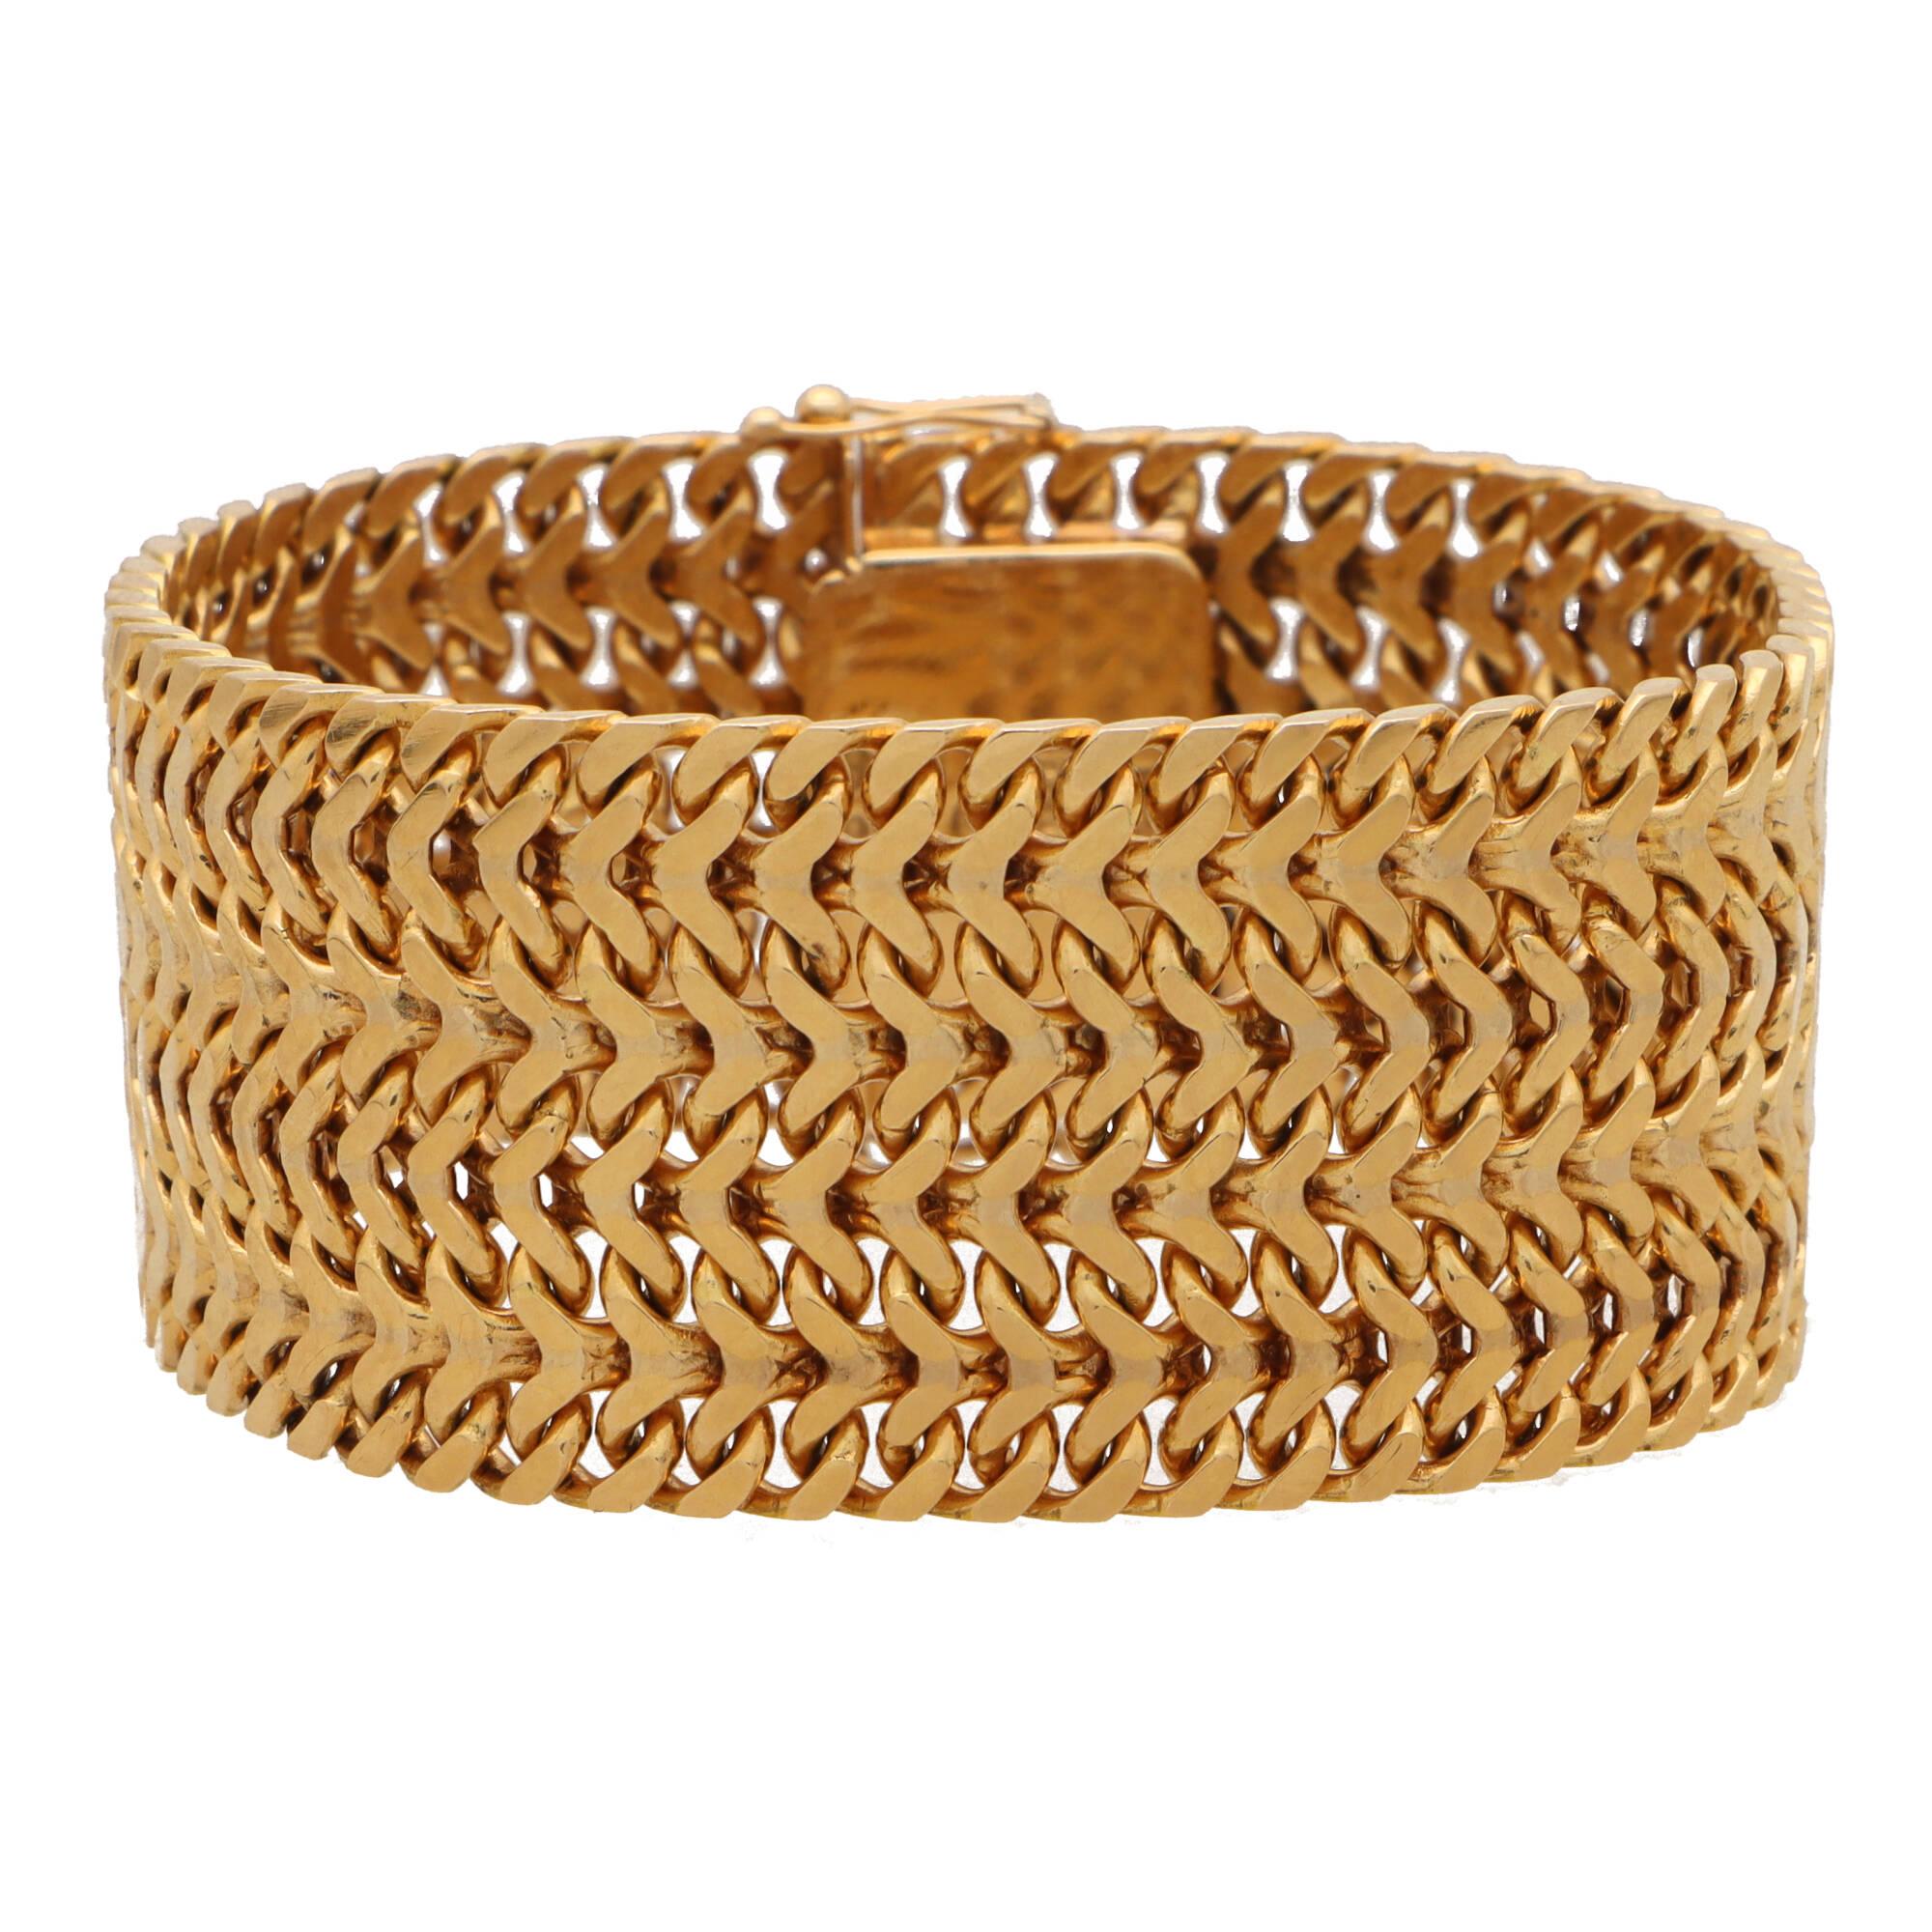 Un magnifique bracelet vintage en maille lourde serti d'or rose 18 carats.

Le bracelet est composé d'une maille de poids élevé et est sécurisé par un fermoir à languette et deux fermetures de sécurité supplémentaires ! Les maillons de la maille